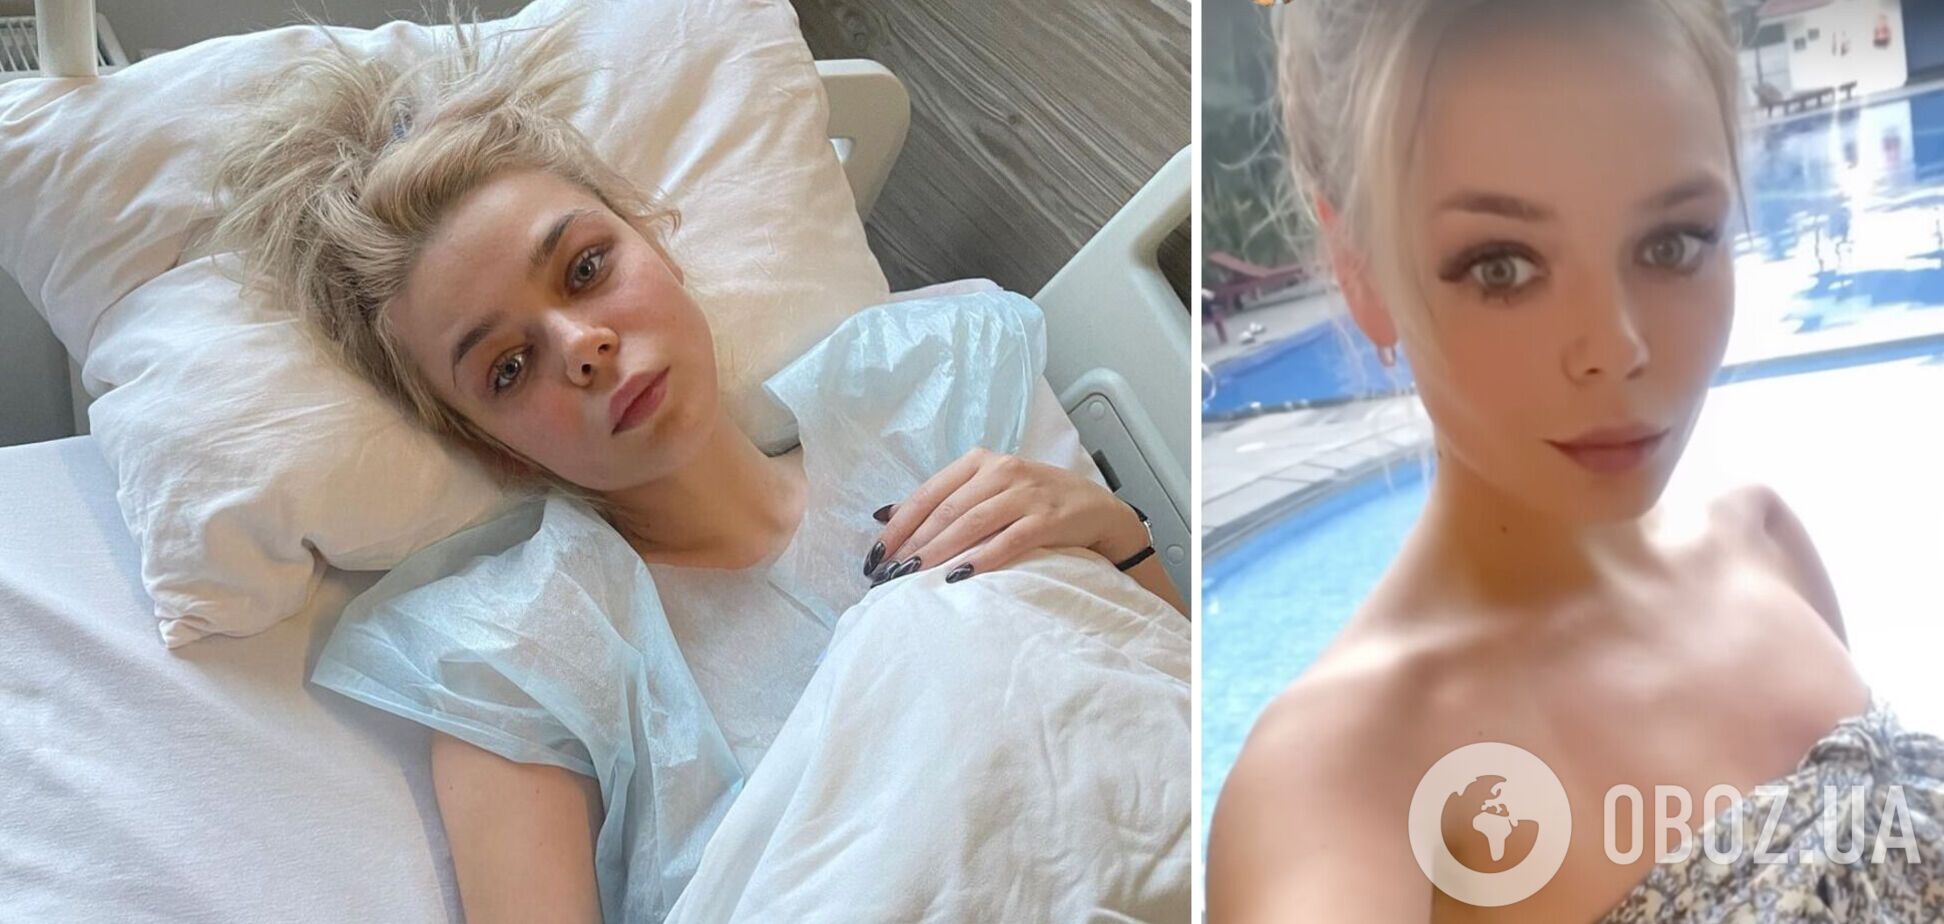 Алина Гросу сильно похудела после операции и лечения в Индии. Фото до и после